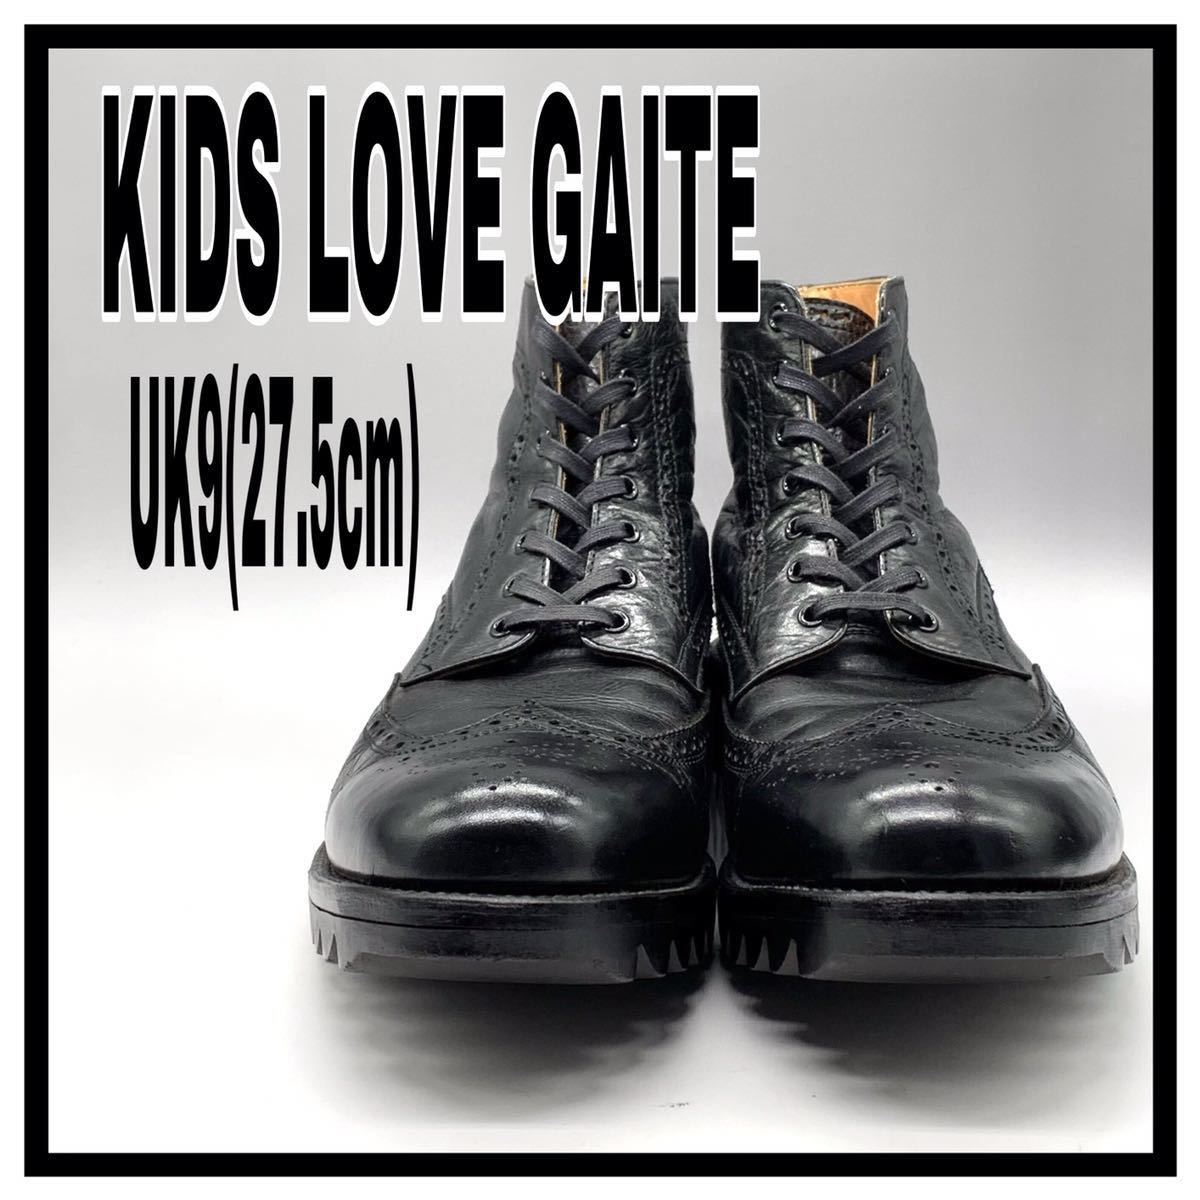 キッズラブゲイト KIDS LOVE GAITE 革靴 レザーシューズ - freshslice.com